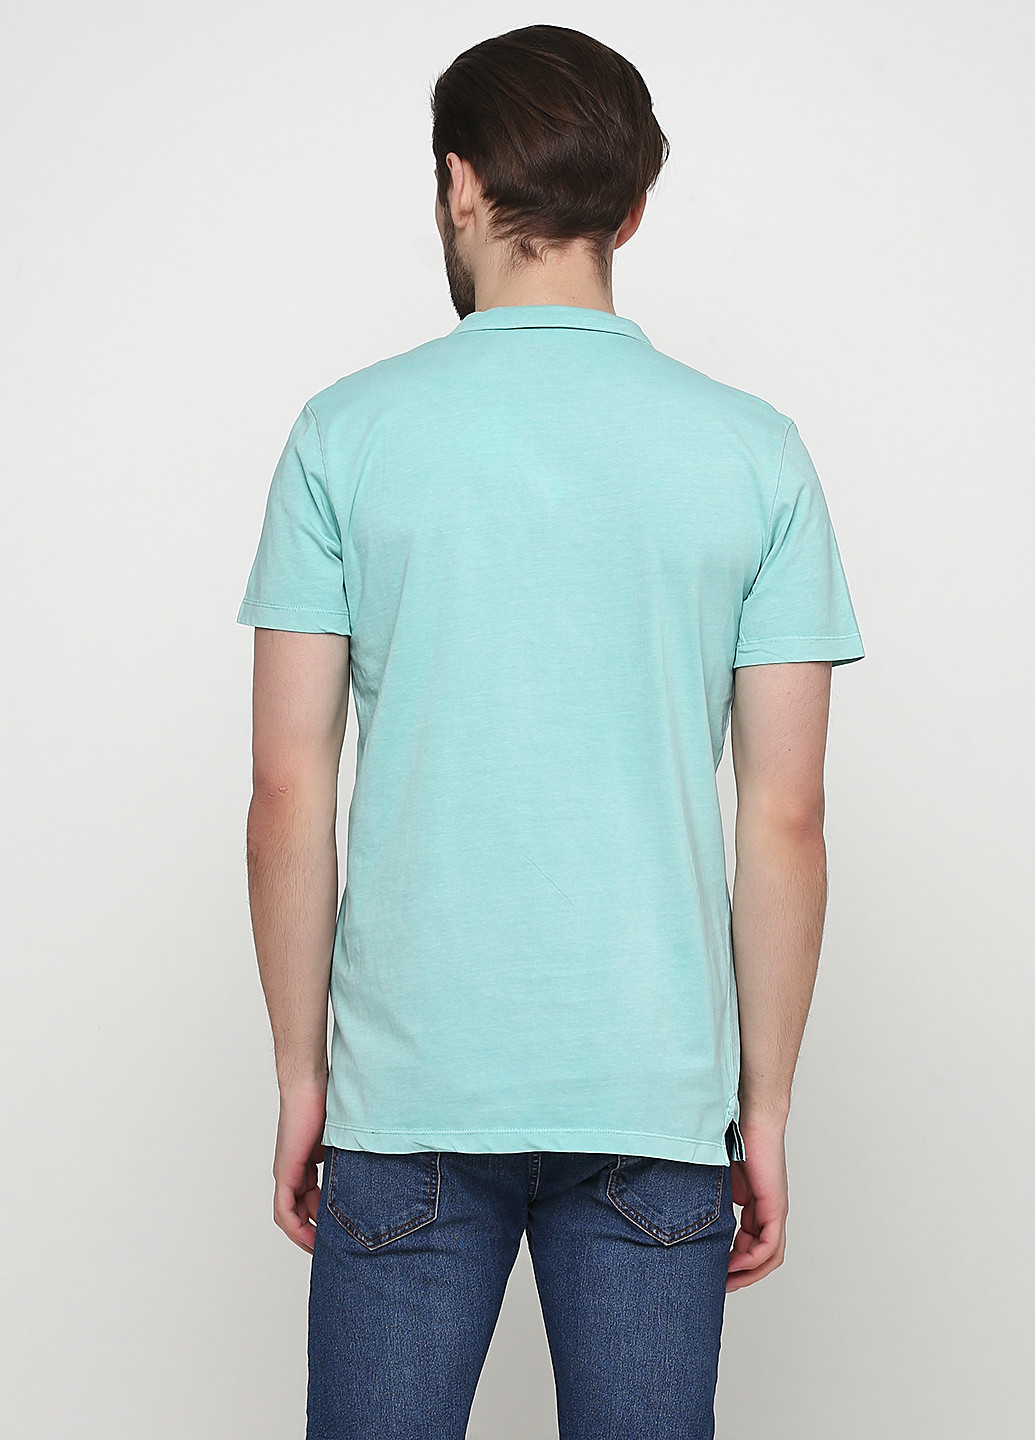 Светло-бирюзовая футболка-поло для мужчин Tom Tailor однотонная